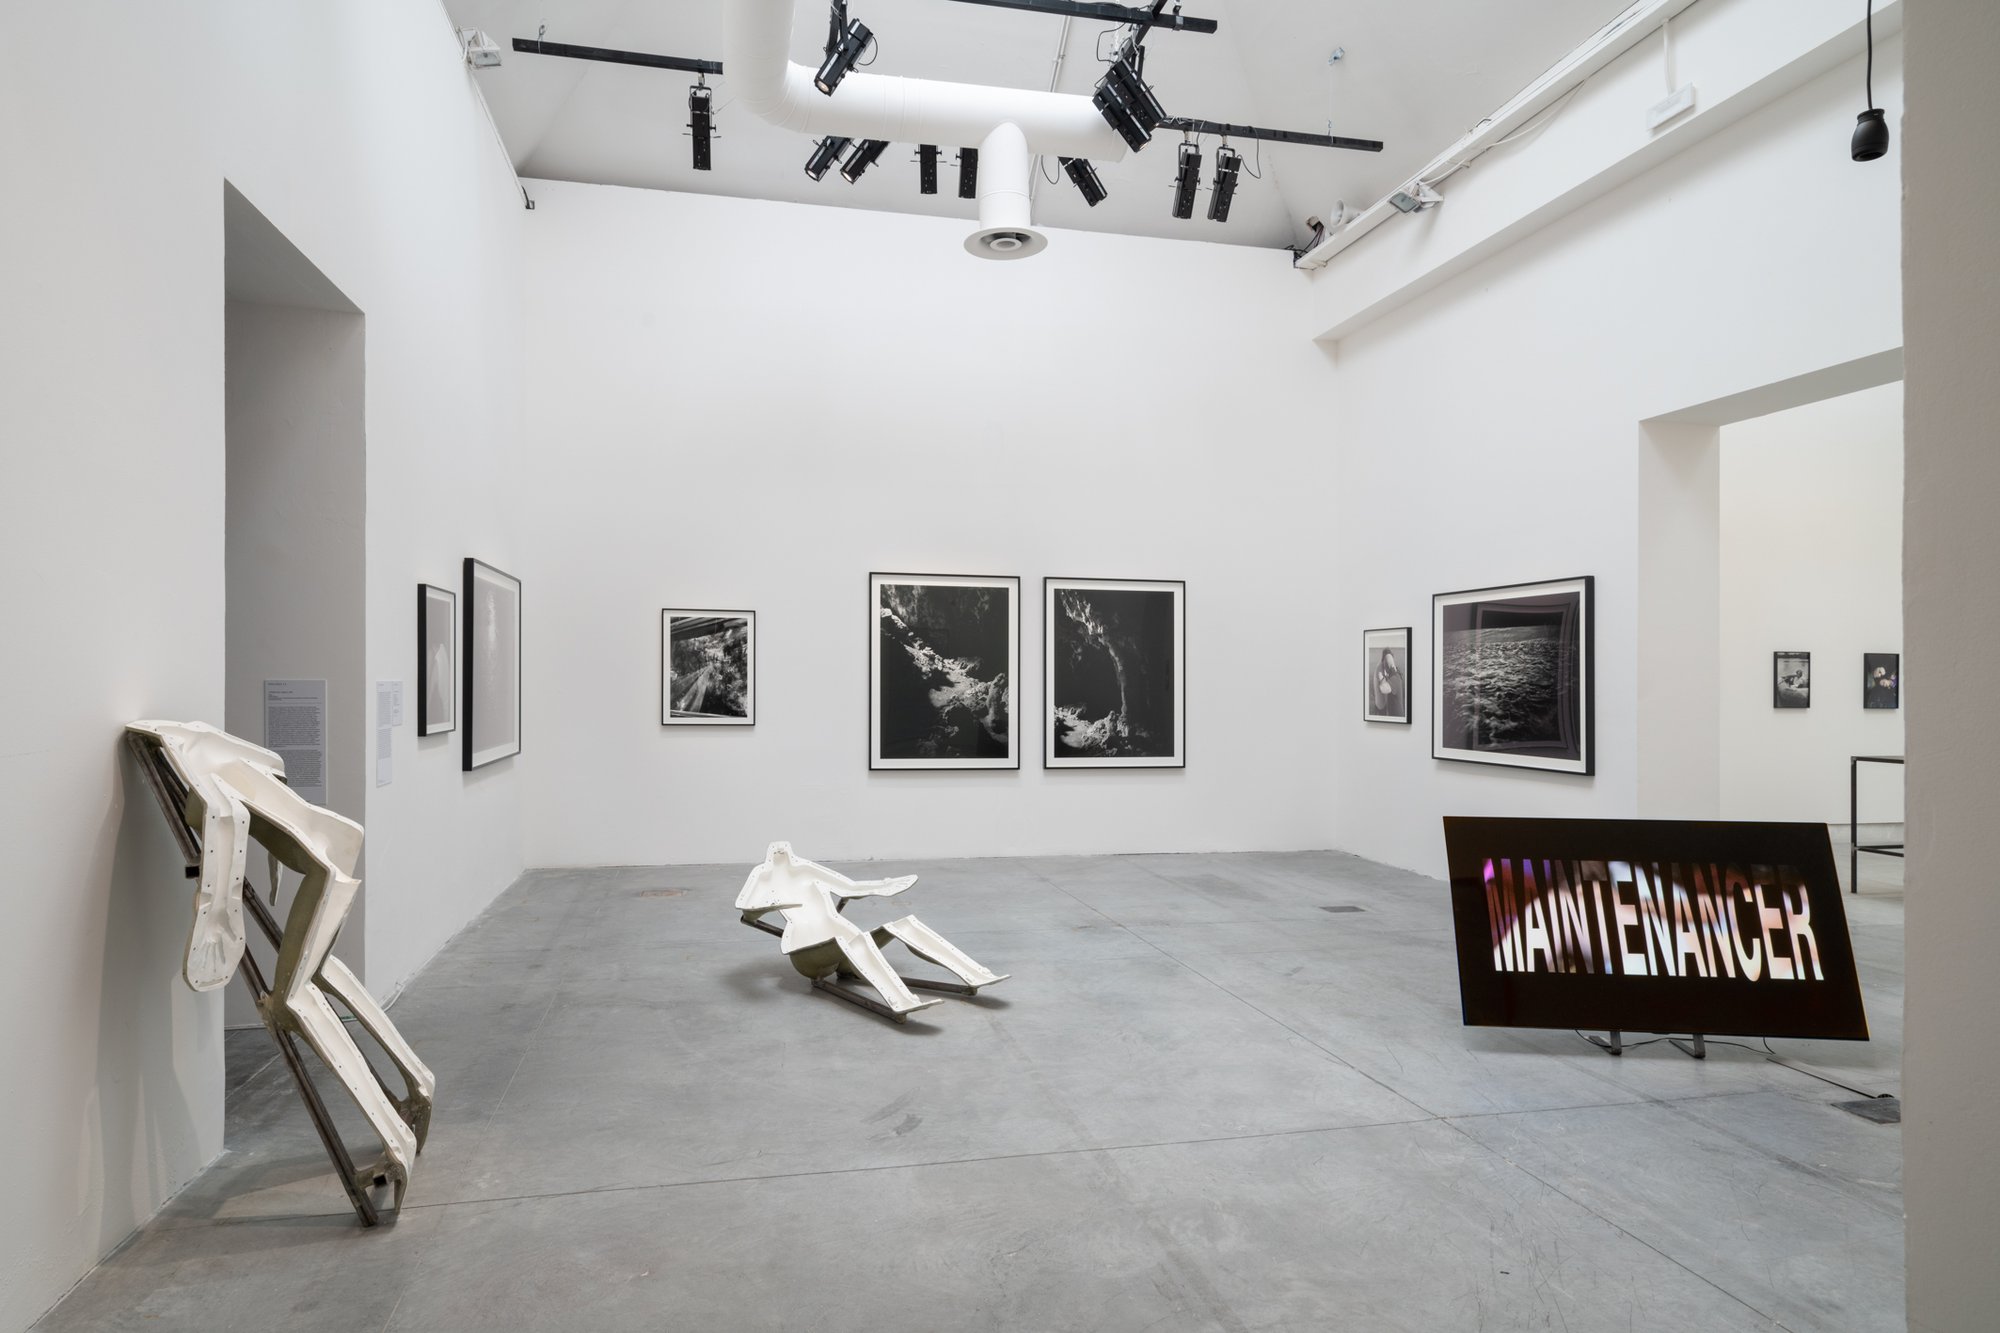 Installation view, The Milk of Dreams, 59th International Art Exhibition – La Biennale di Venezia, Venice, 2022